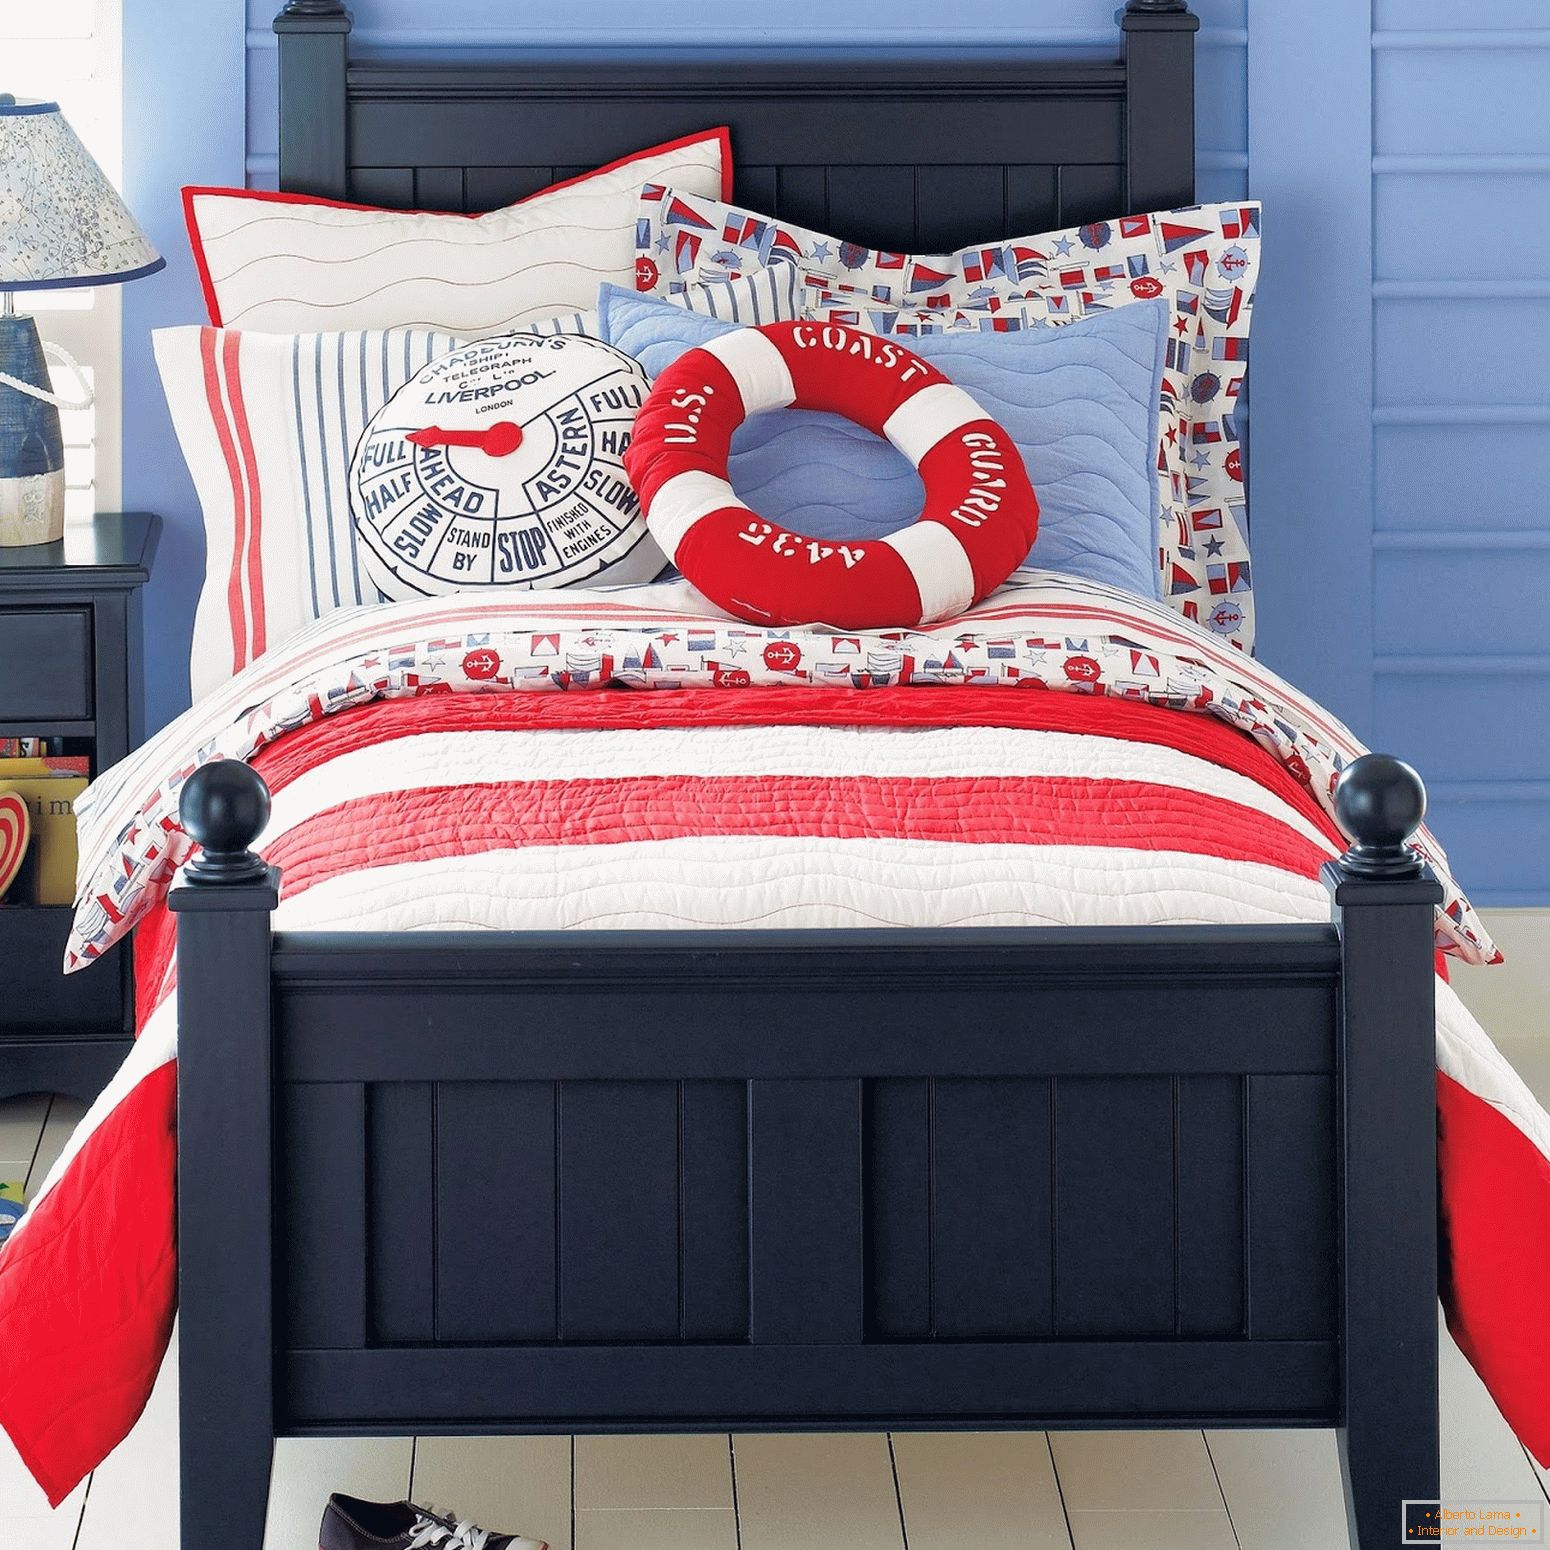 Uma cama para um marinheiro